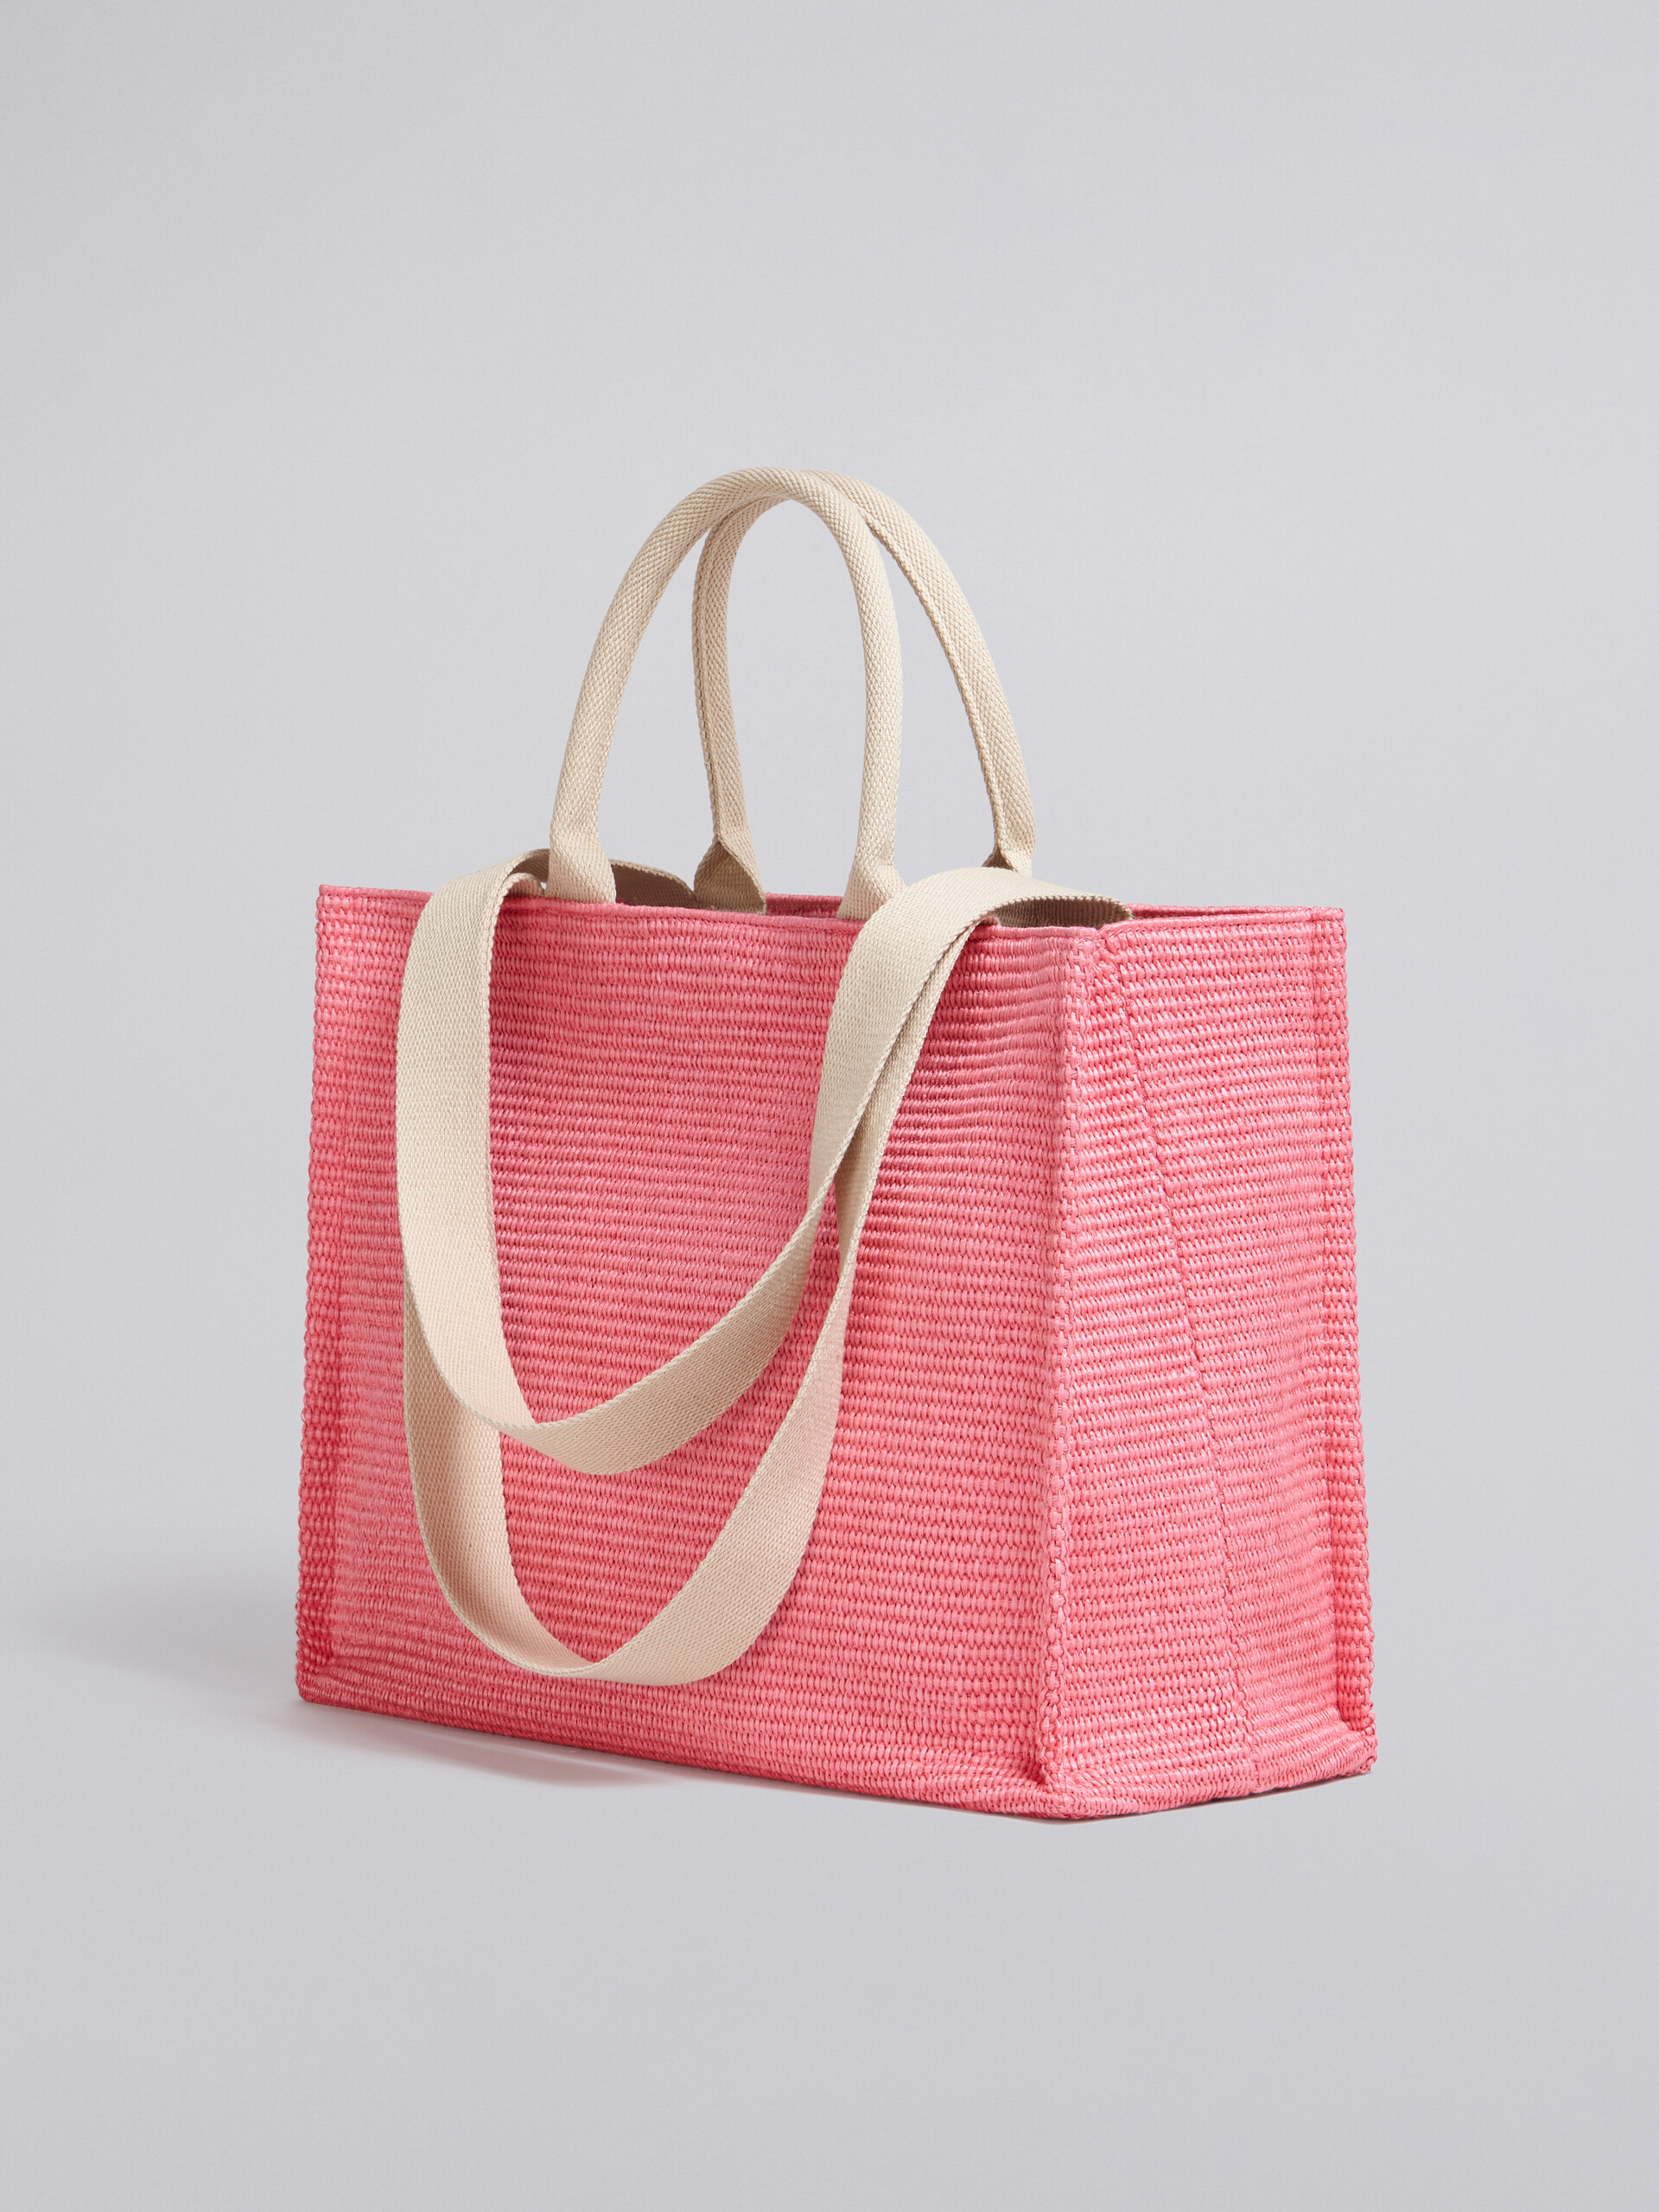 Large pink raffia tote bag - Shopping Bags - Image 2